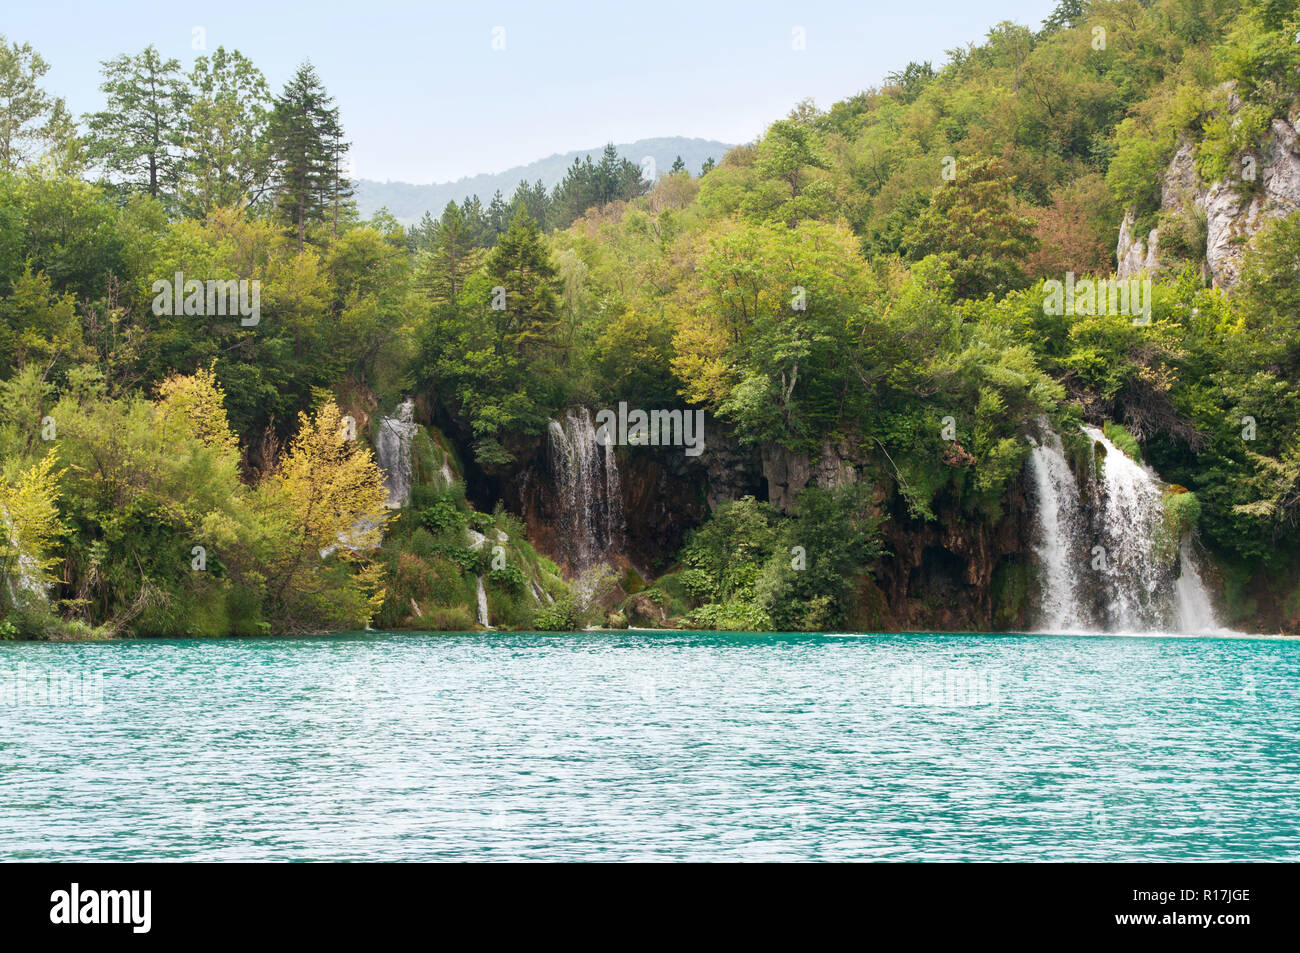 Cascades of Milanovac waterfall Stock Photo